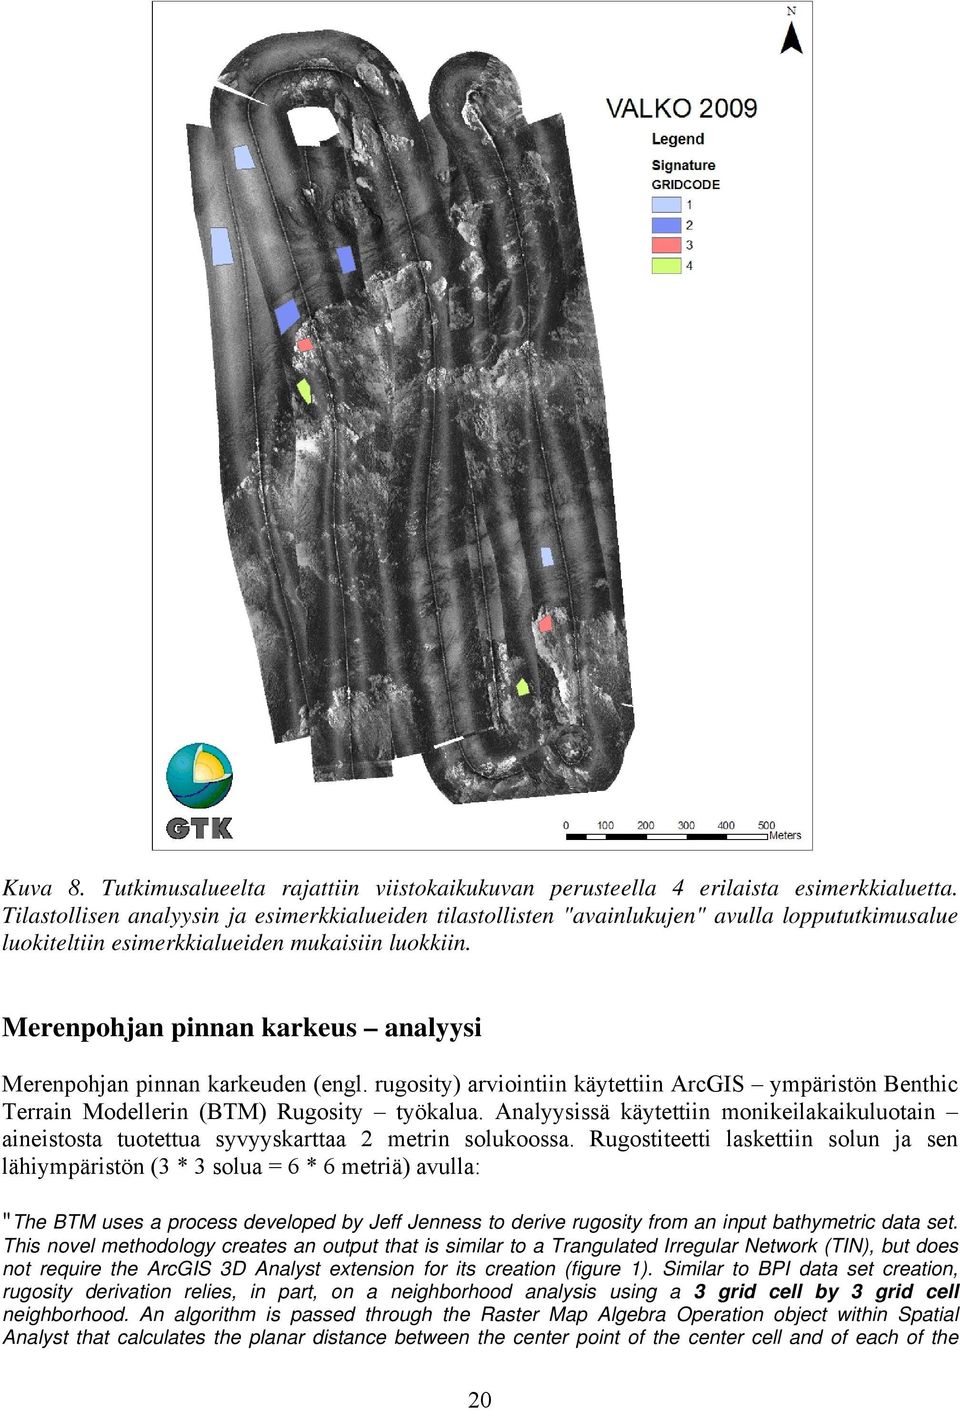 Merenpohjan pinnan karkeus analyysi Merenpohjan pinnan karkeuden (engl. rugosity) arviointiin käytettiin ArcGIS ympäristön Benthic Terrain Modellerin (BTM) Rugosity työkalua.